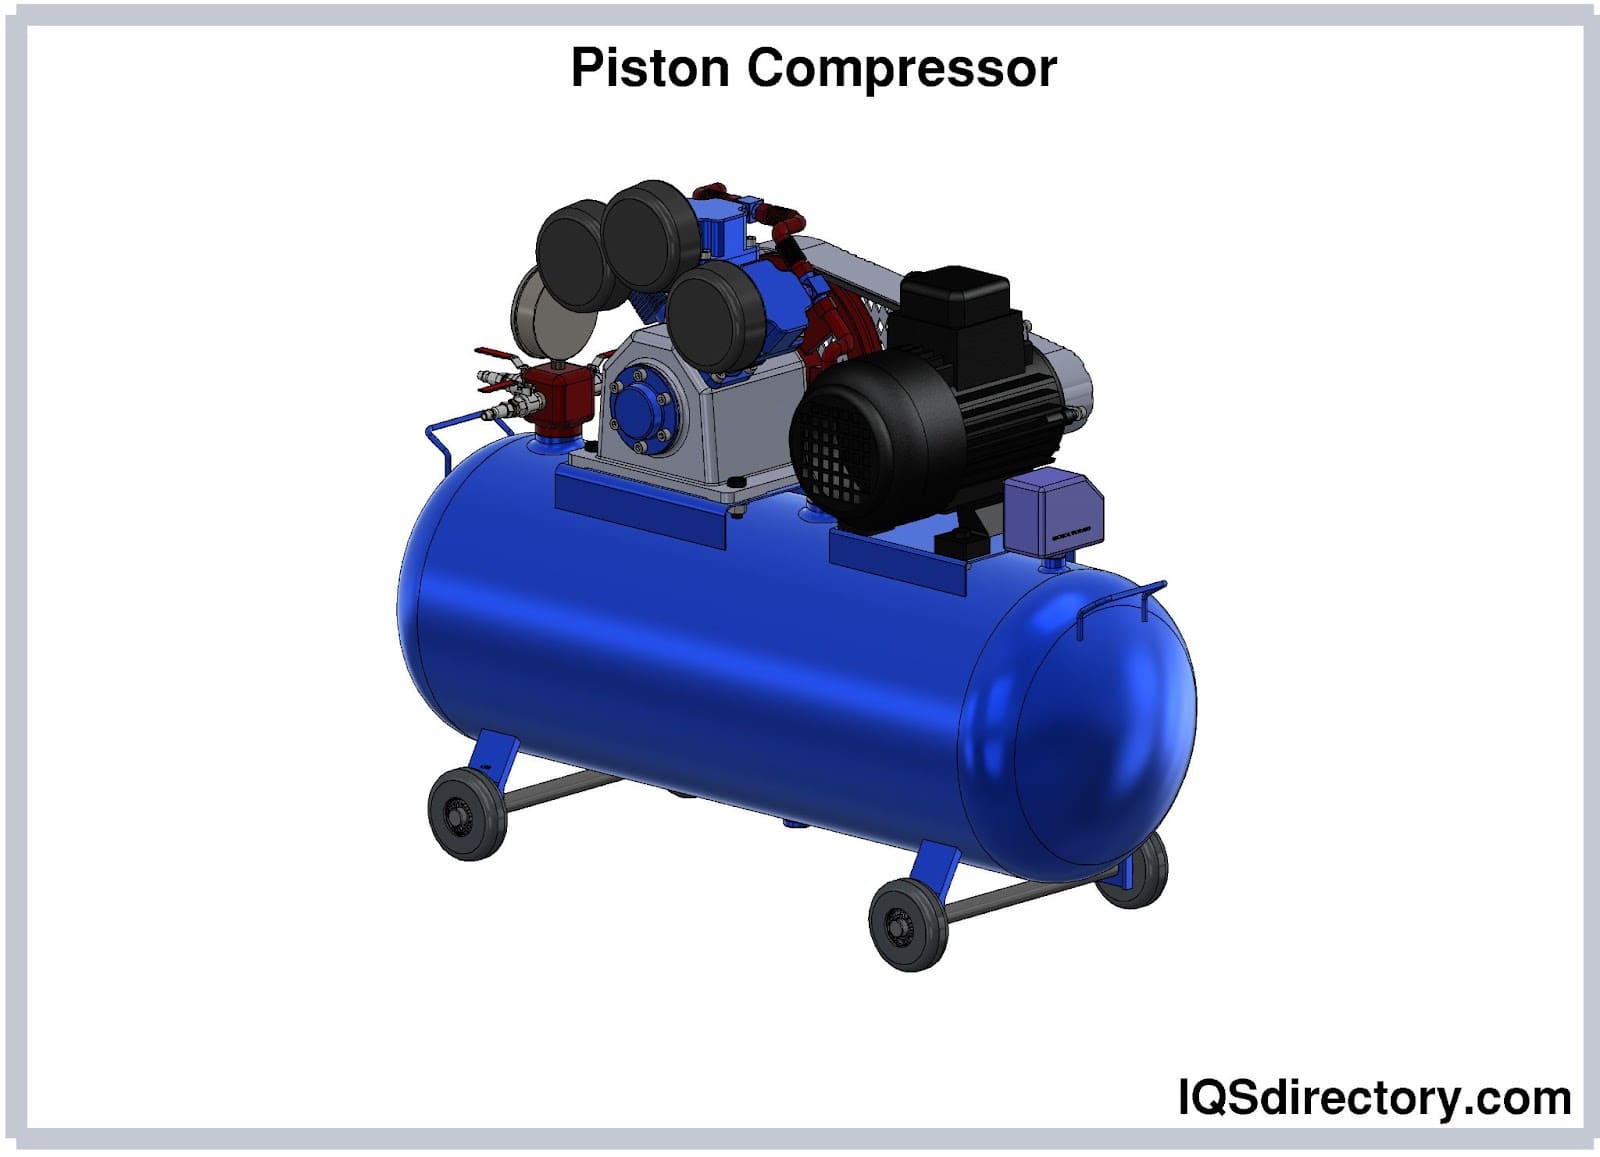 Piston Compressor